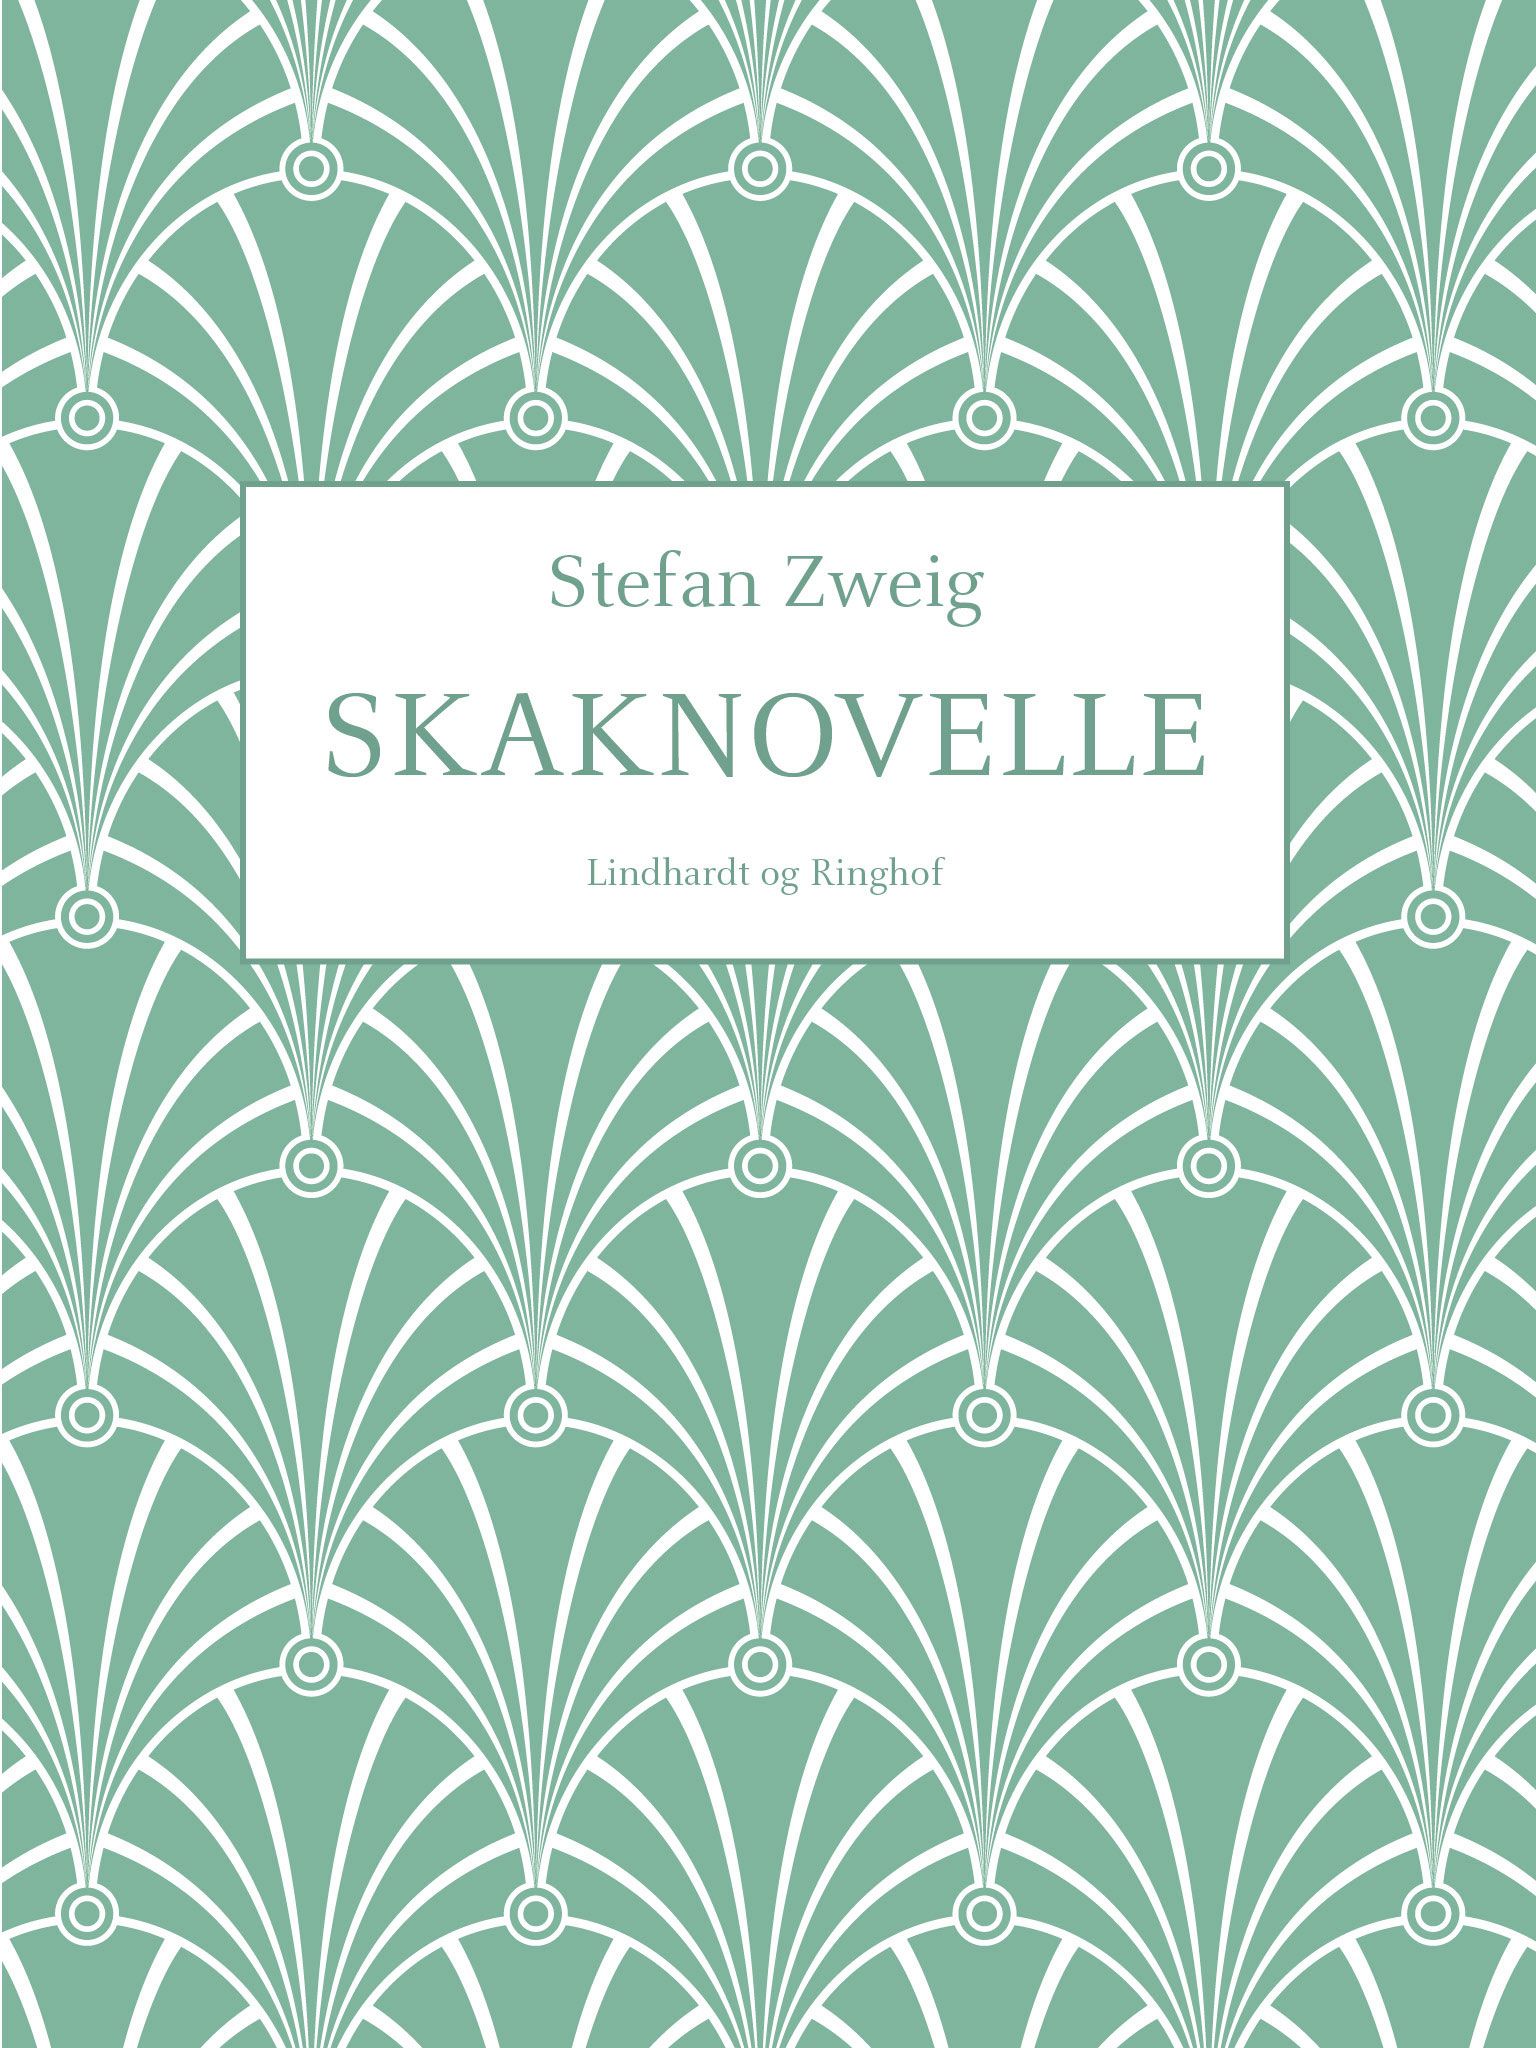 Skaknovelle, lydbog af Stefan Zweig